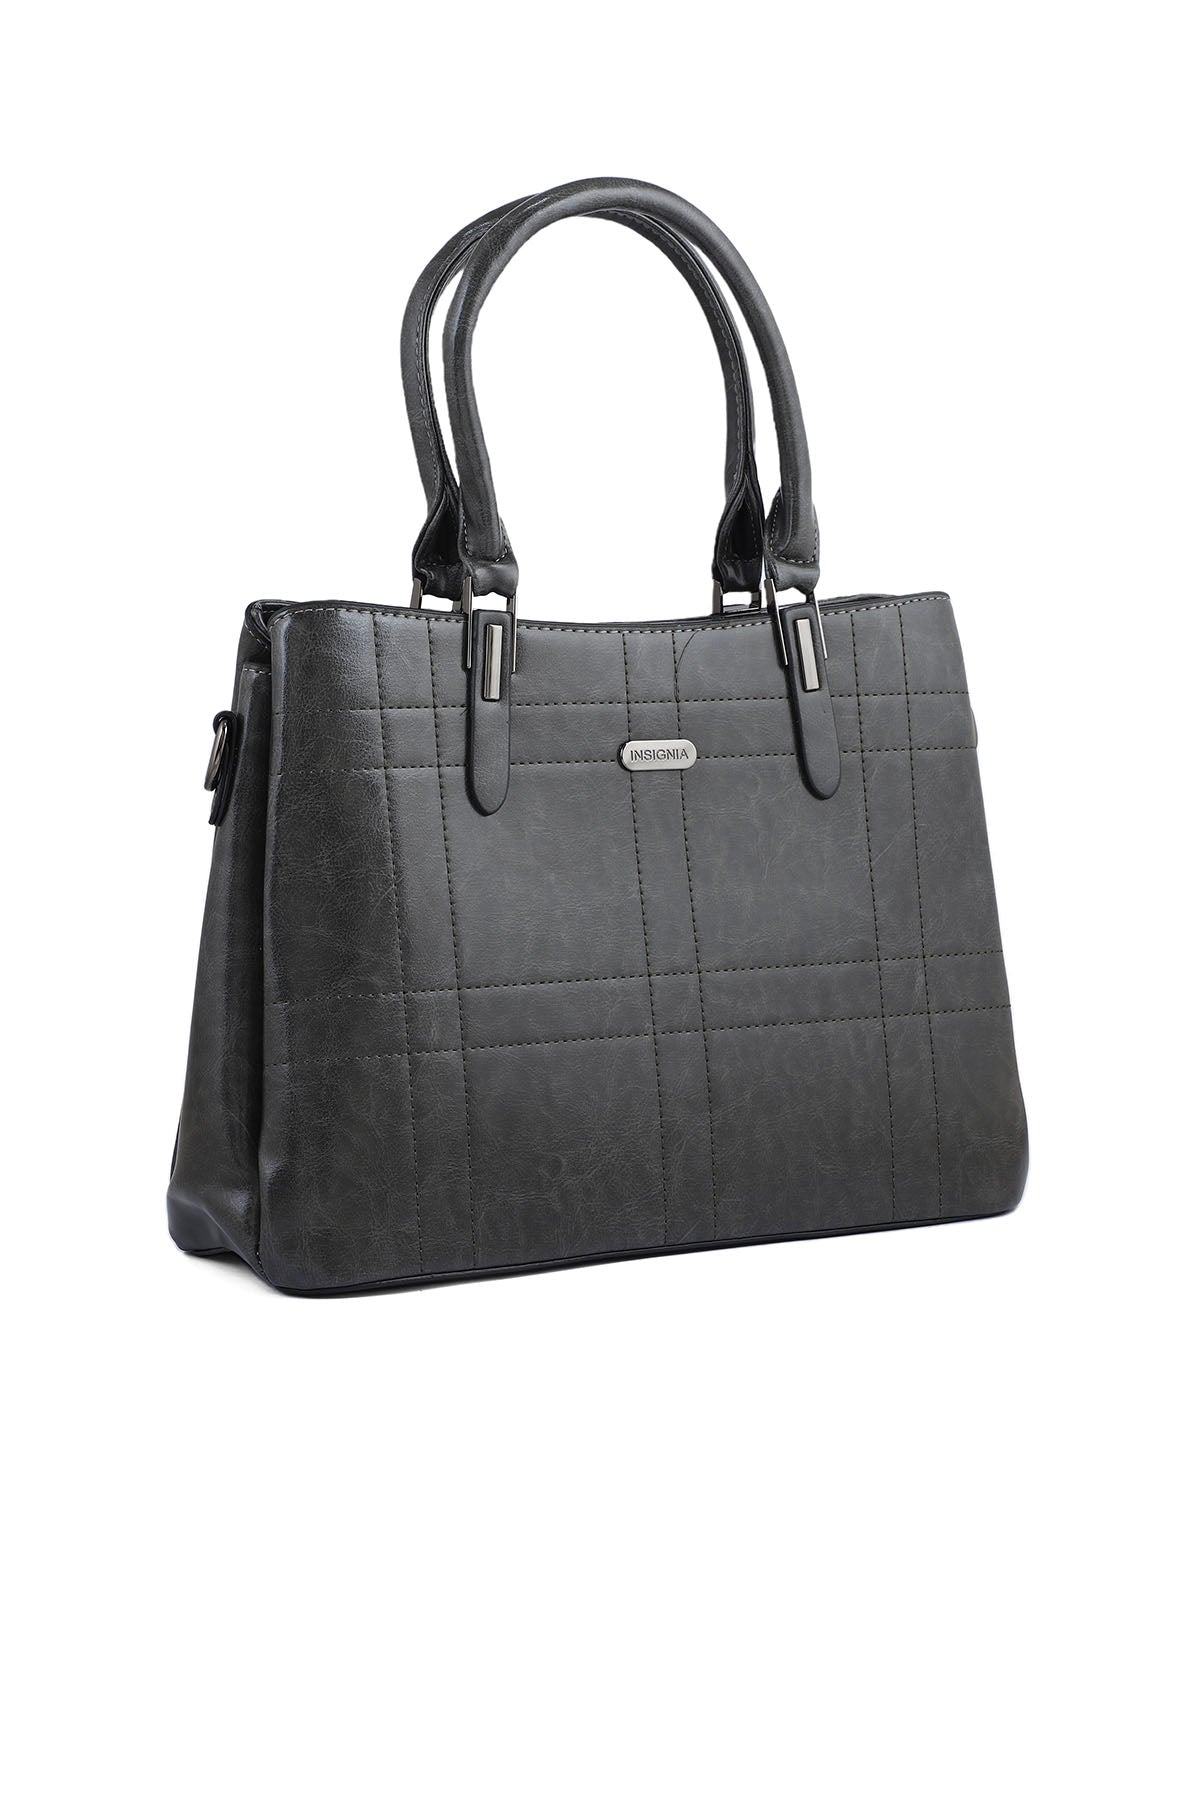 Formal Tote Hand Bags B14973-Grey